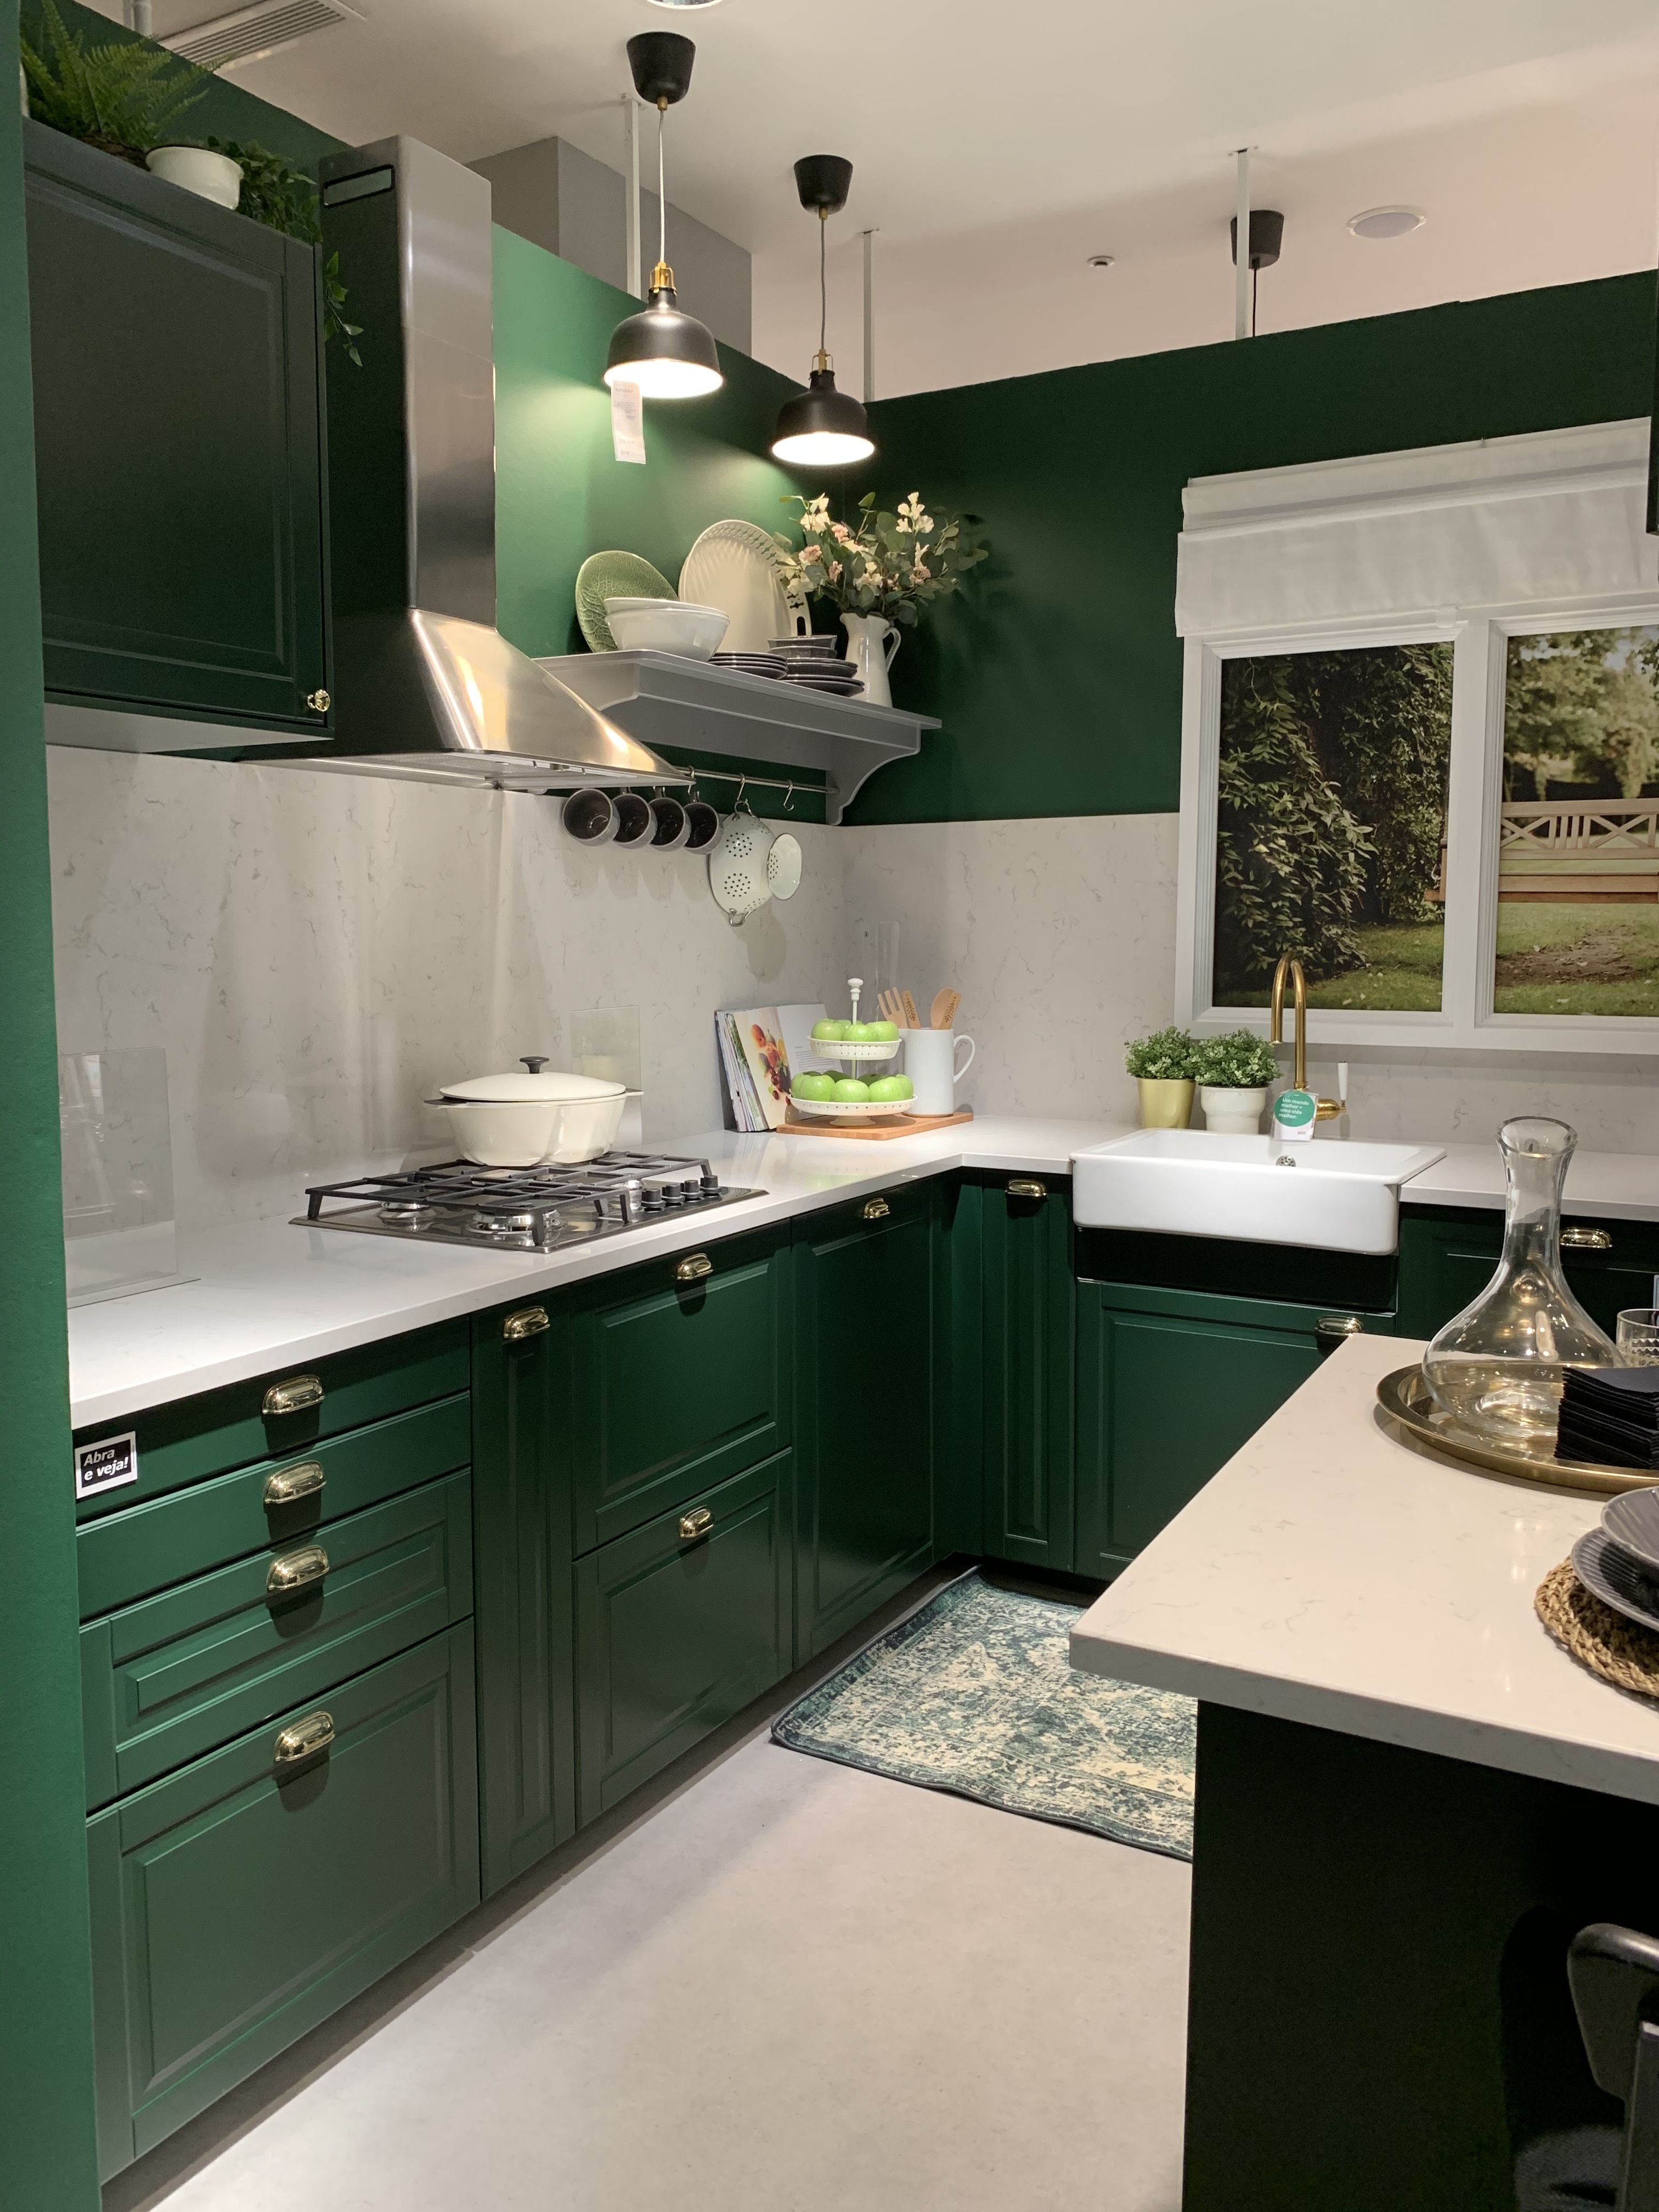 Кухни зеленого цвета и салатовые кухни - советы дизайнеров и фото кухонь в интерьере